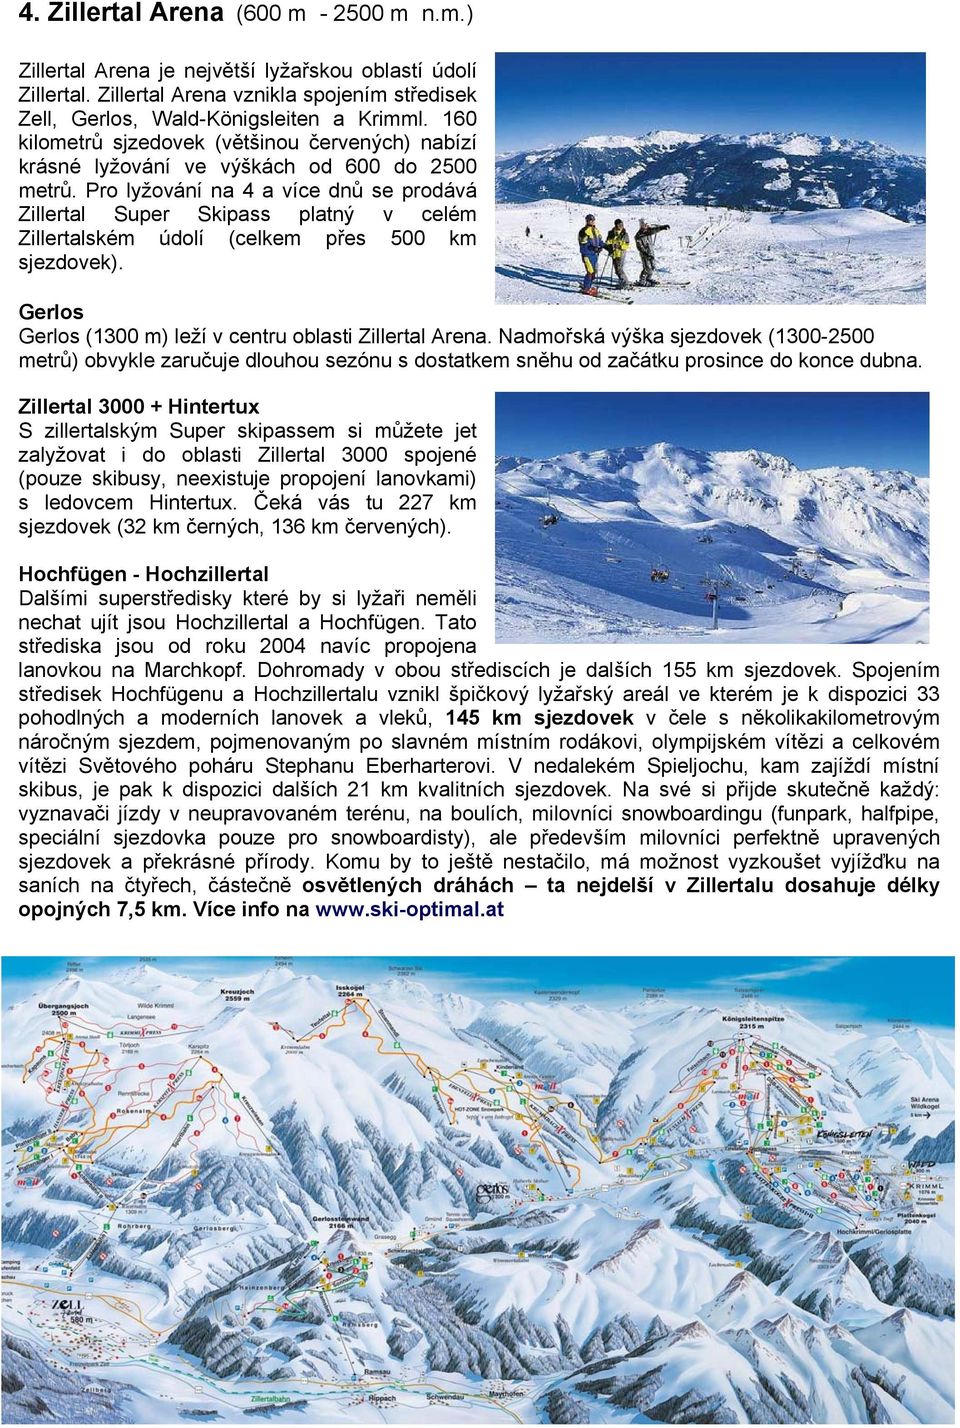 Pro lyžování na 4 a více dnů se prodává Zillertal Super Skipass platný v celém Zillertalském údolí (celkem přes 500 km sjezdovek). Gerlos Gerlos (1300 m) leží v centru oblasti Zillertal Arena.